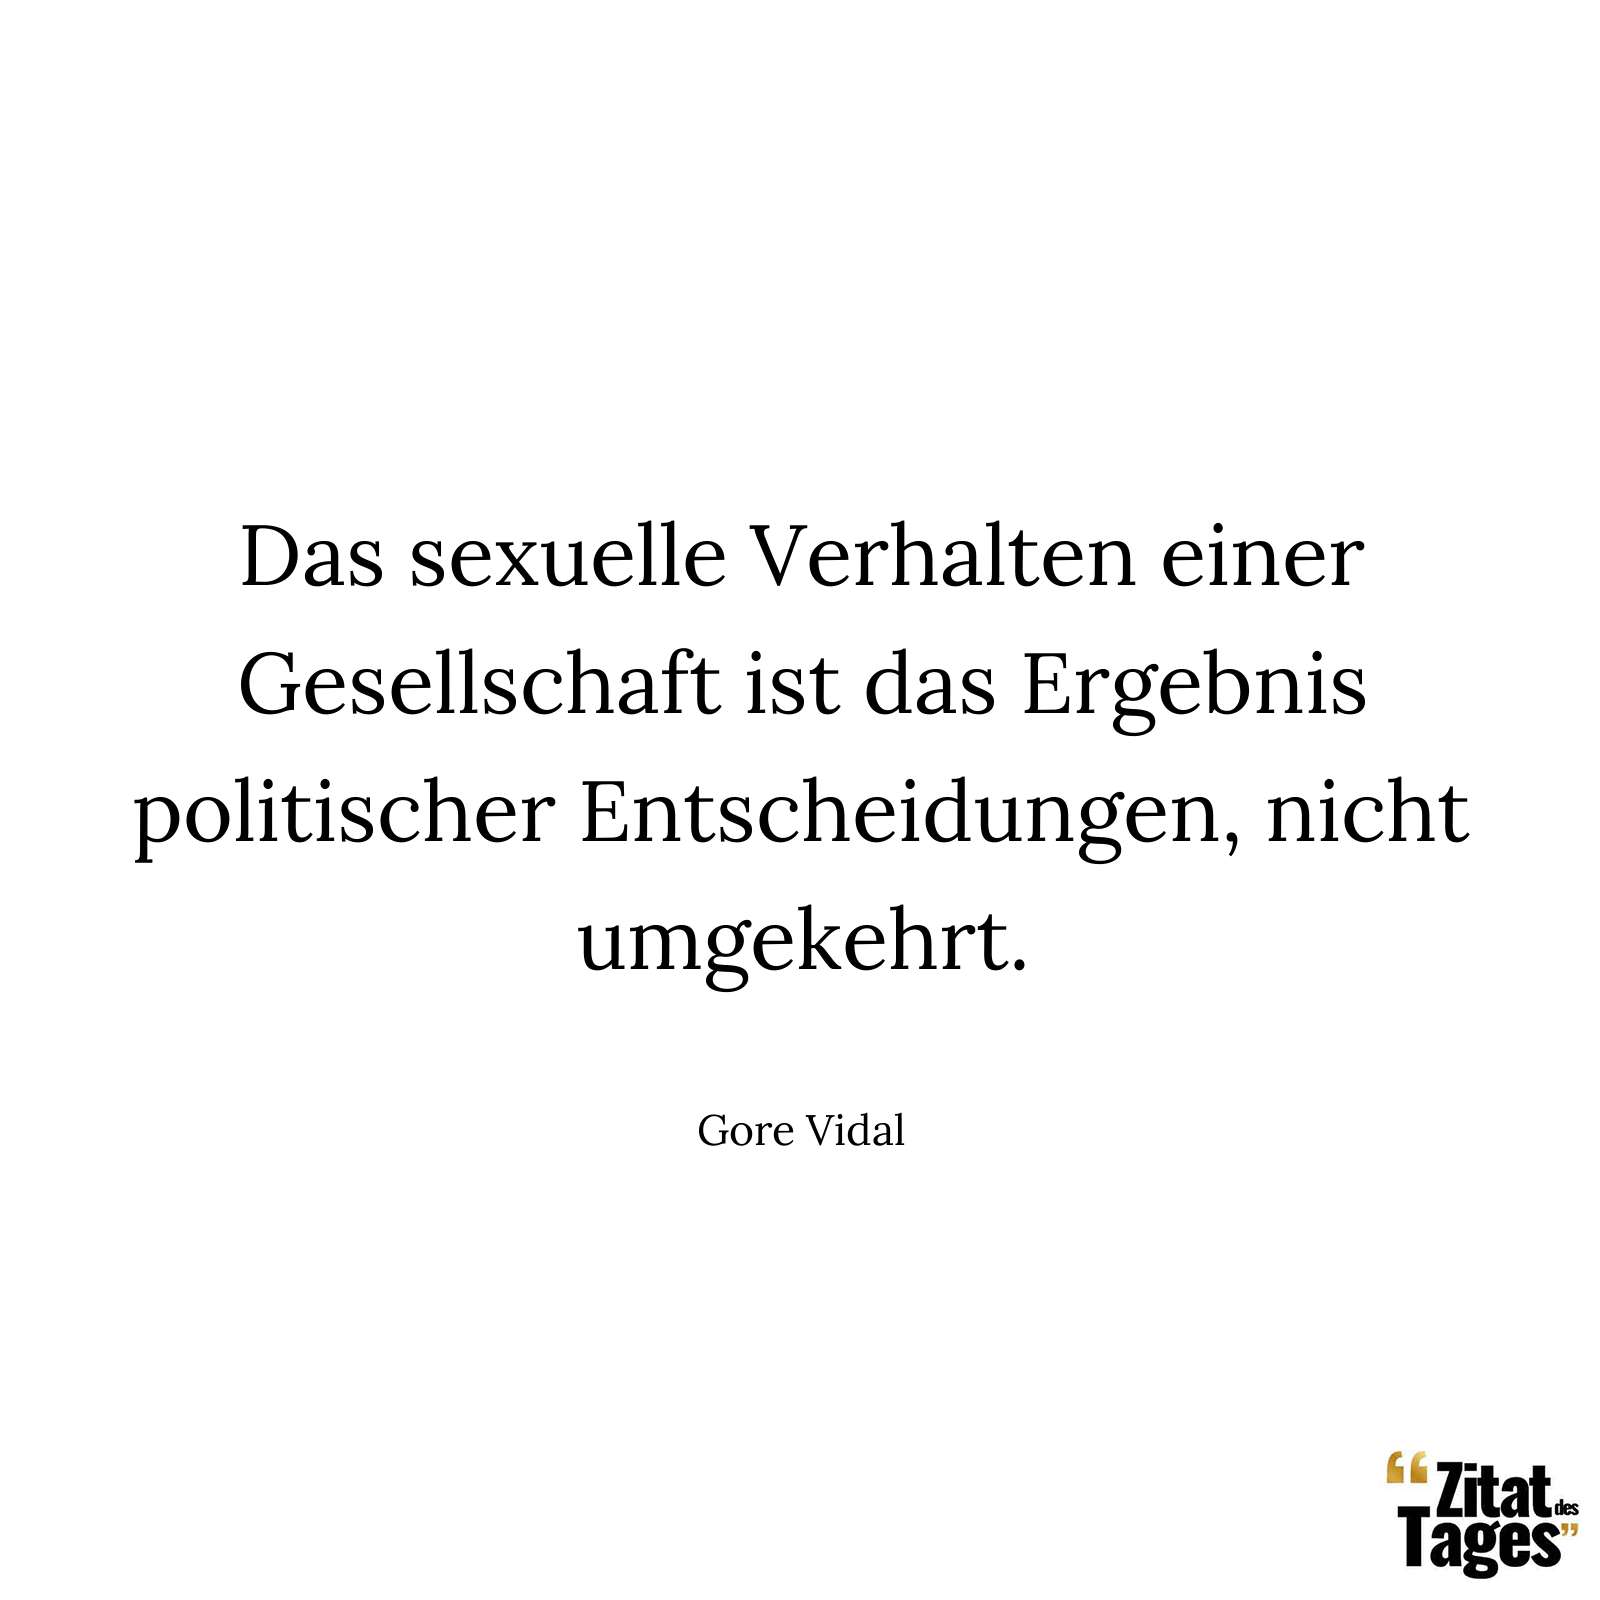 Das sexuelle Verhalten einer Gesellschaft ist das Ergebnis politischer Entscheidungen, nicht umgekehrt. - Gore Vidal